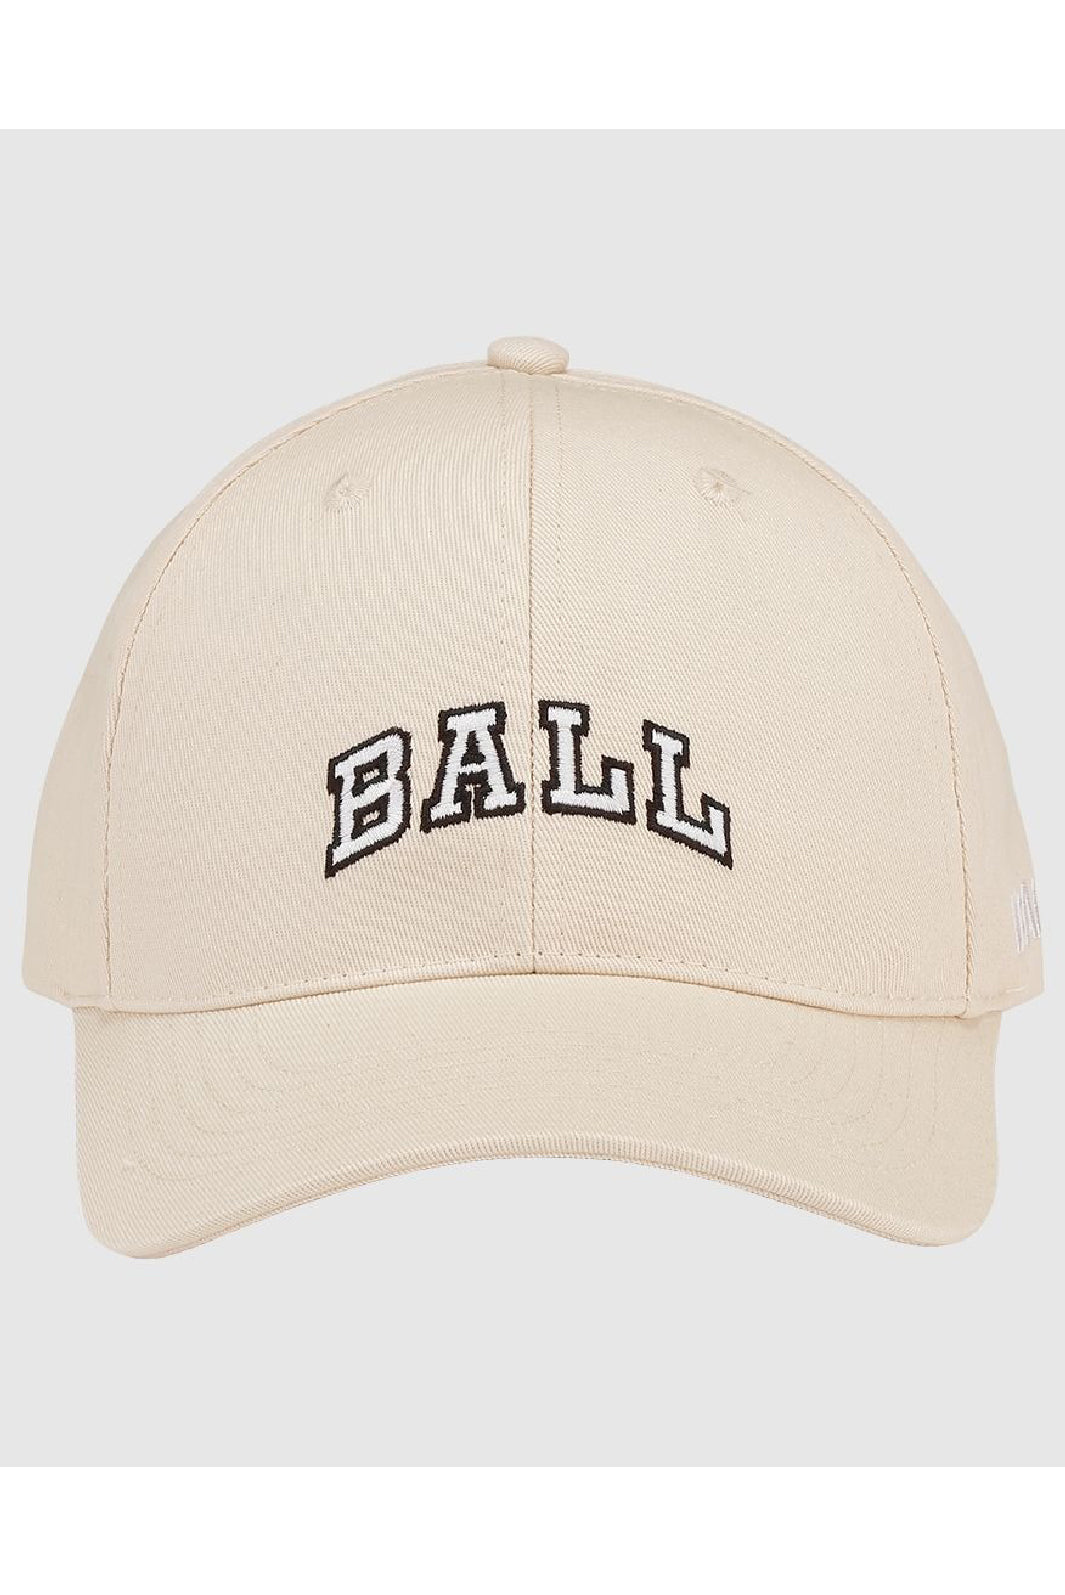 Ball - Original Cap - Off White Kasketter 